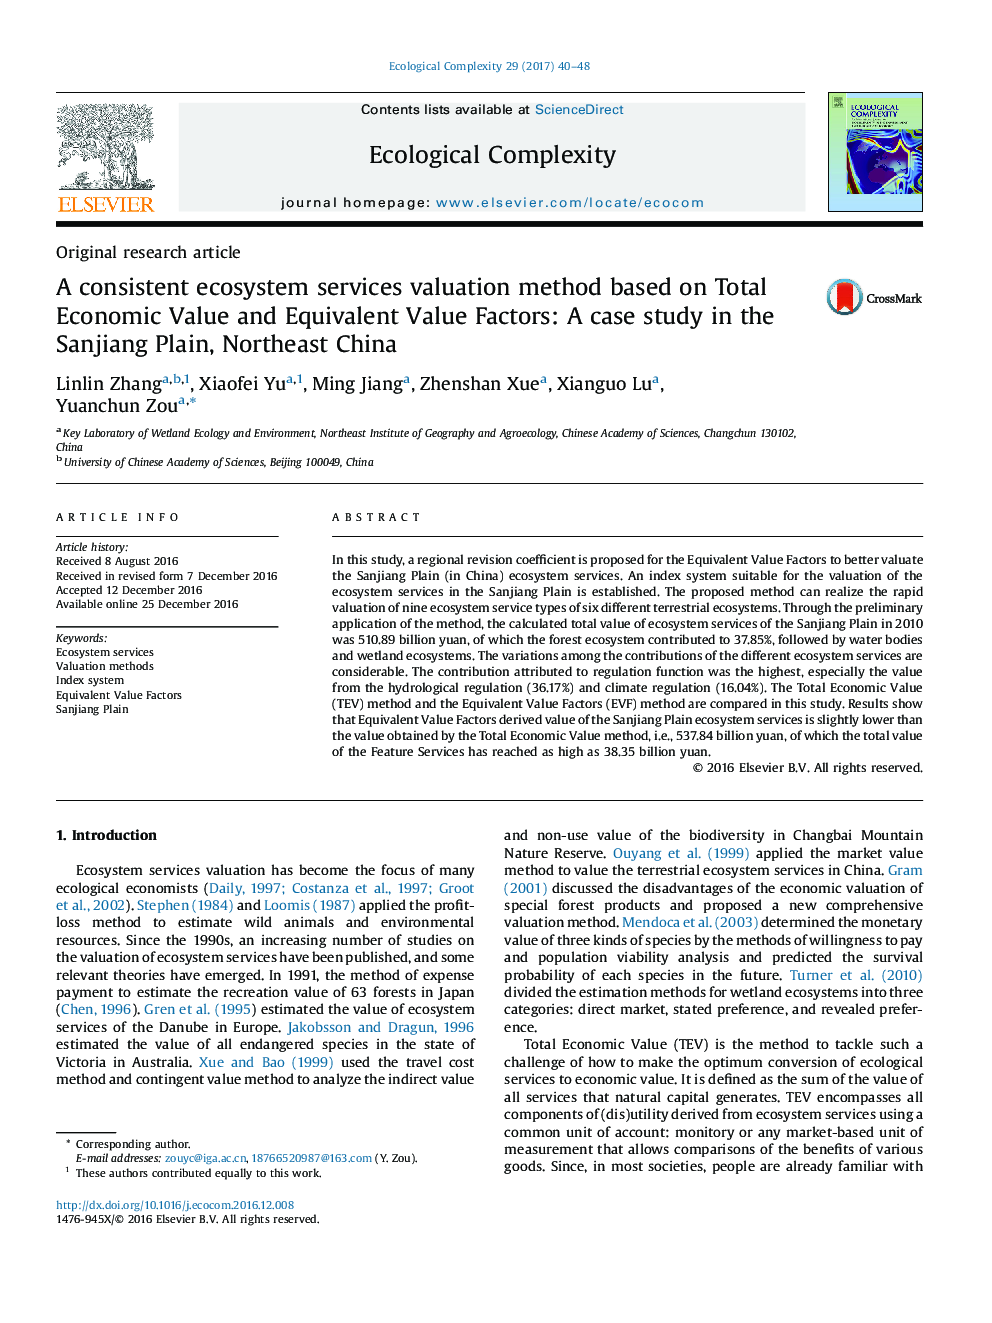 مقاله پژوهشی اصلی: روش ارزیابی خدمات اکوسیستم پایدار بر اساس ارزش اقتصادی و ارزش های معادل آن: مطالعه موردی در دشت سانجینگ، شمال شرقی چین 